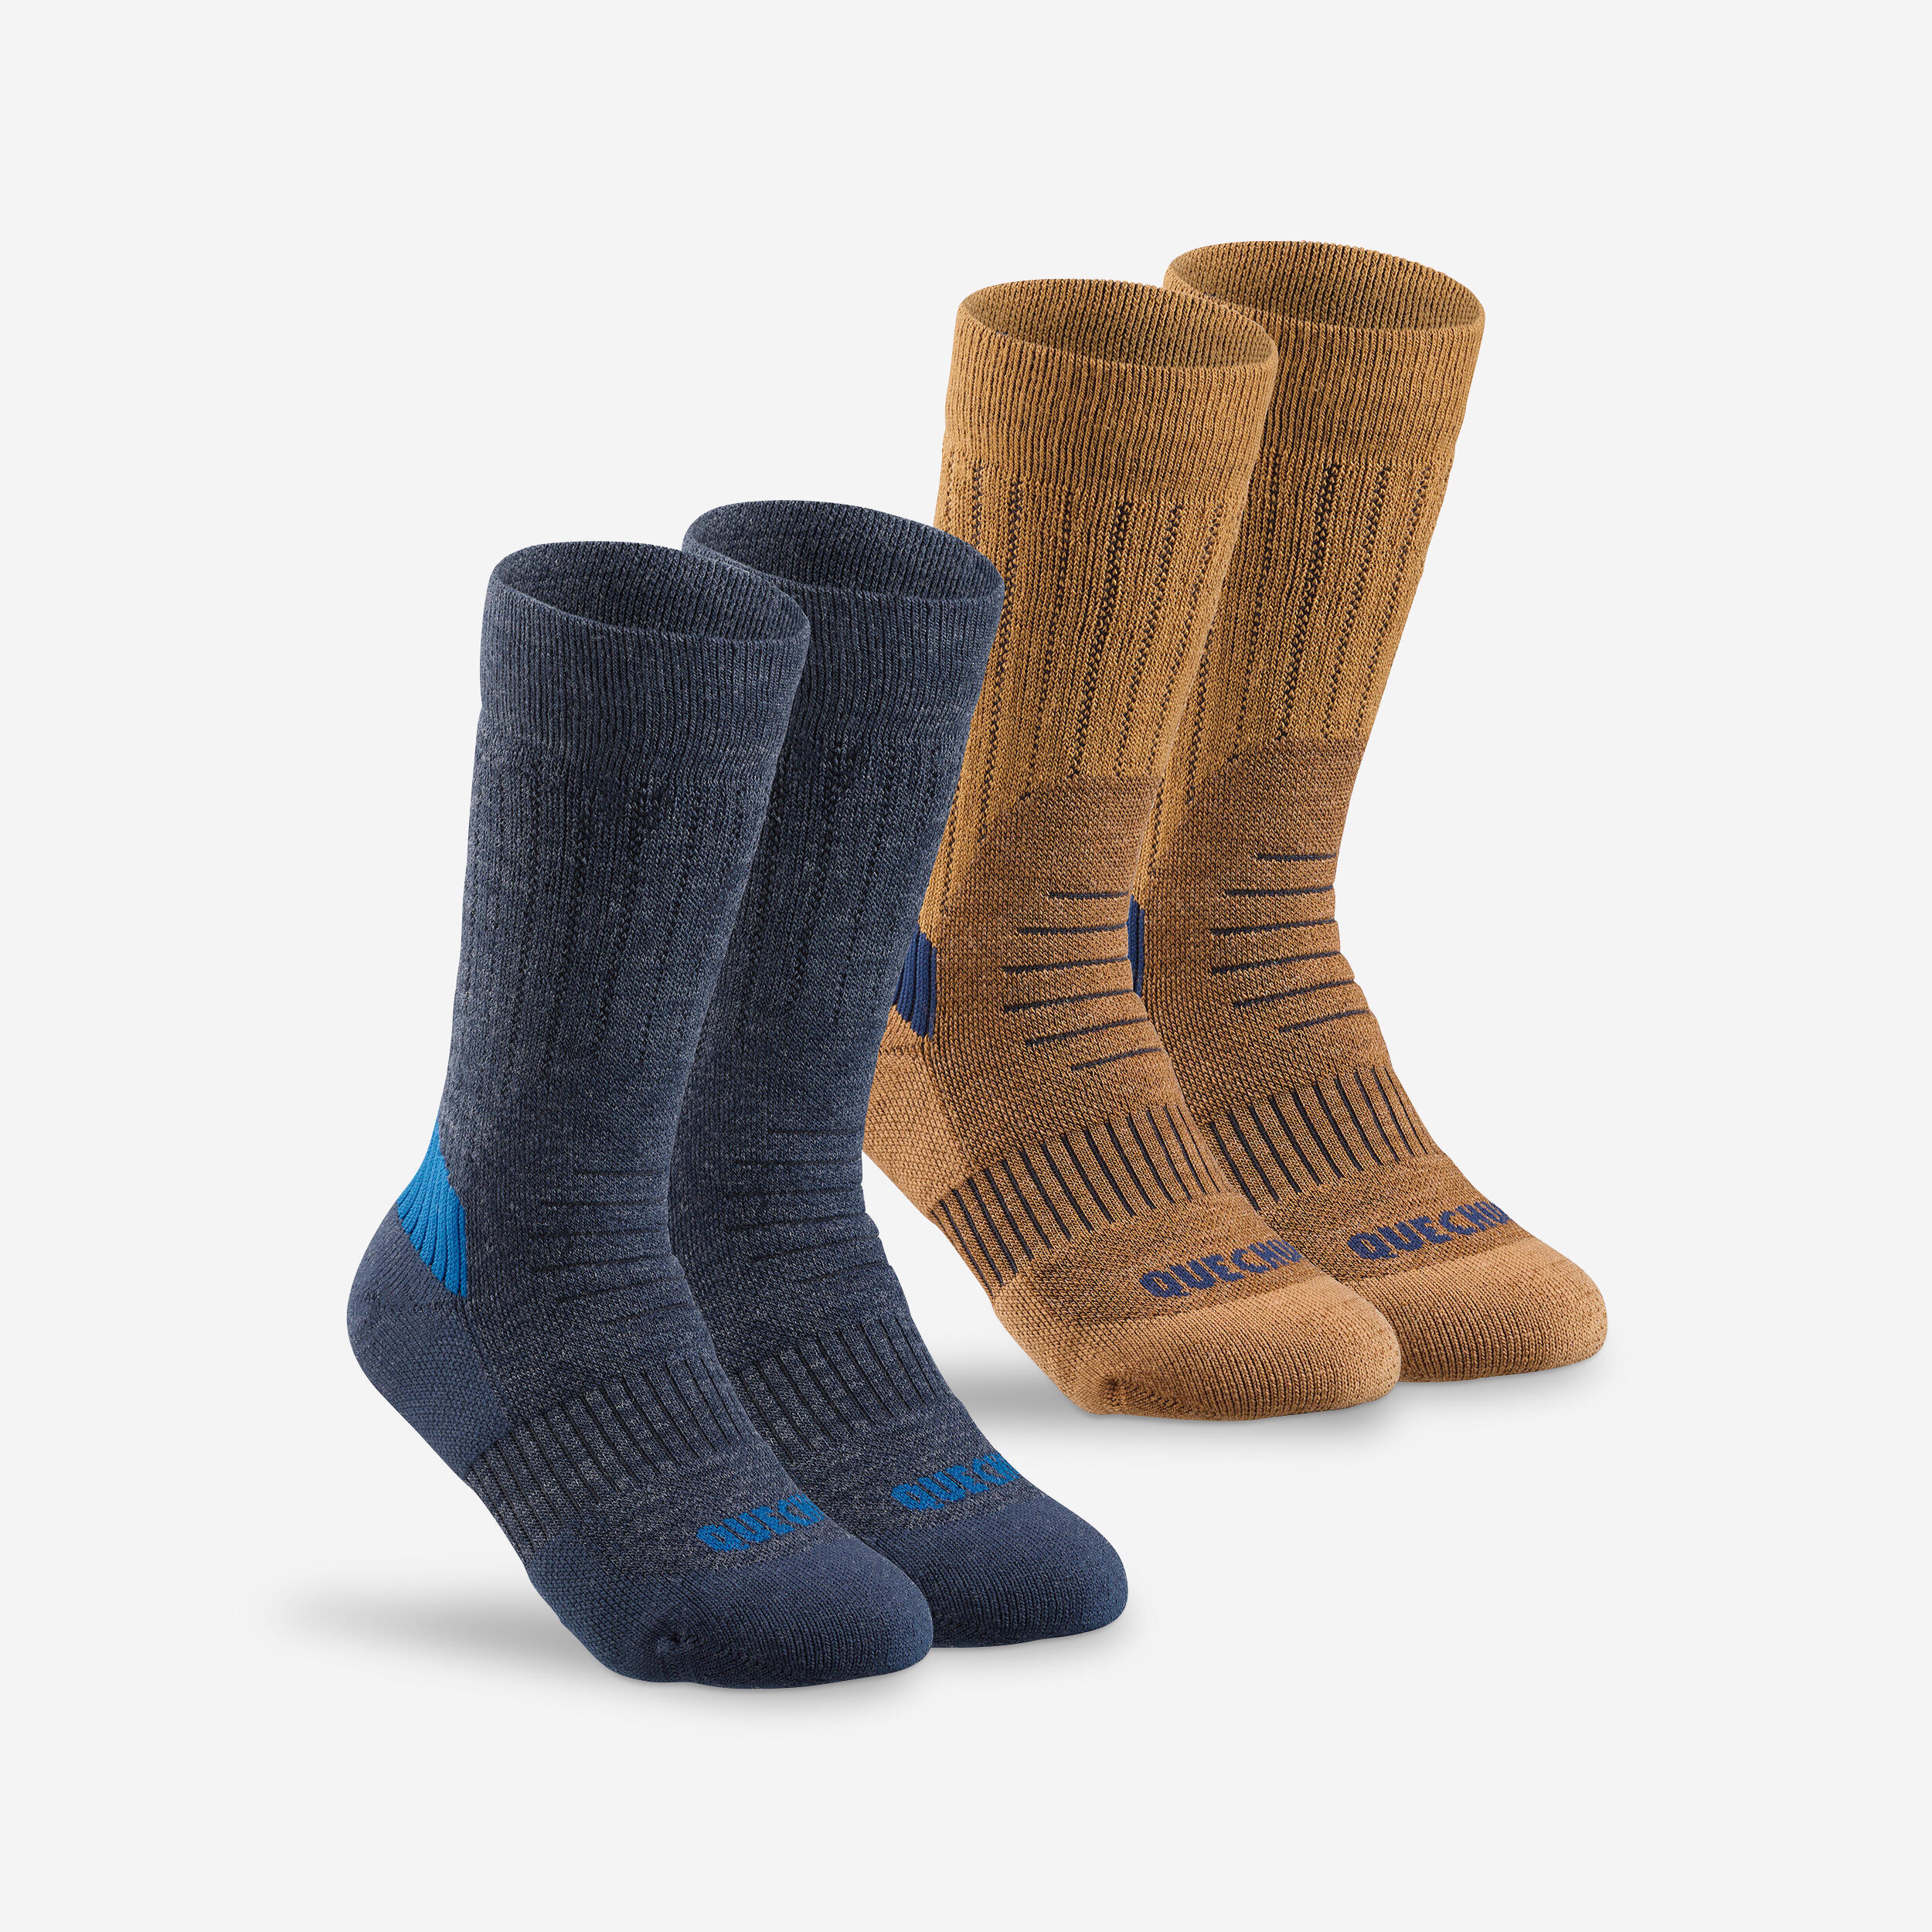 Kids’ Warm Hiking Socks SH100 Mid 2 Pairs 1/9